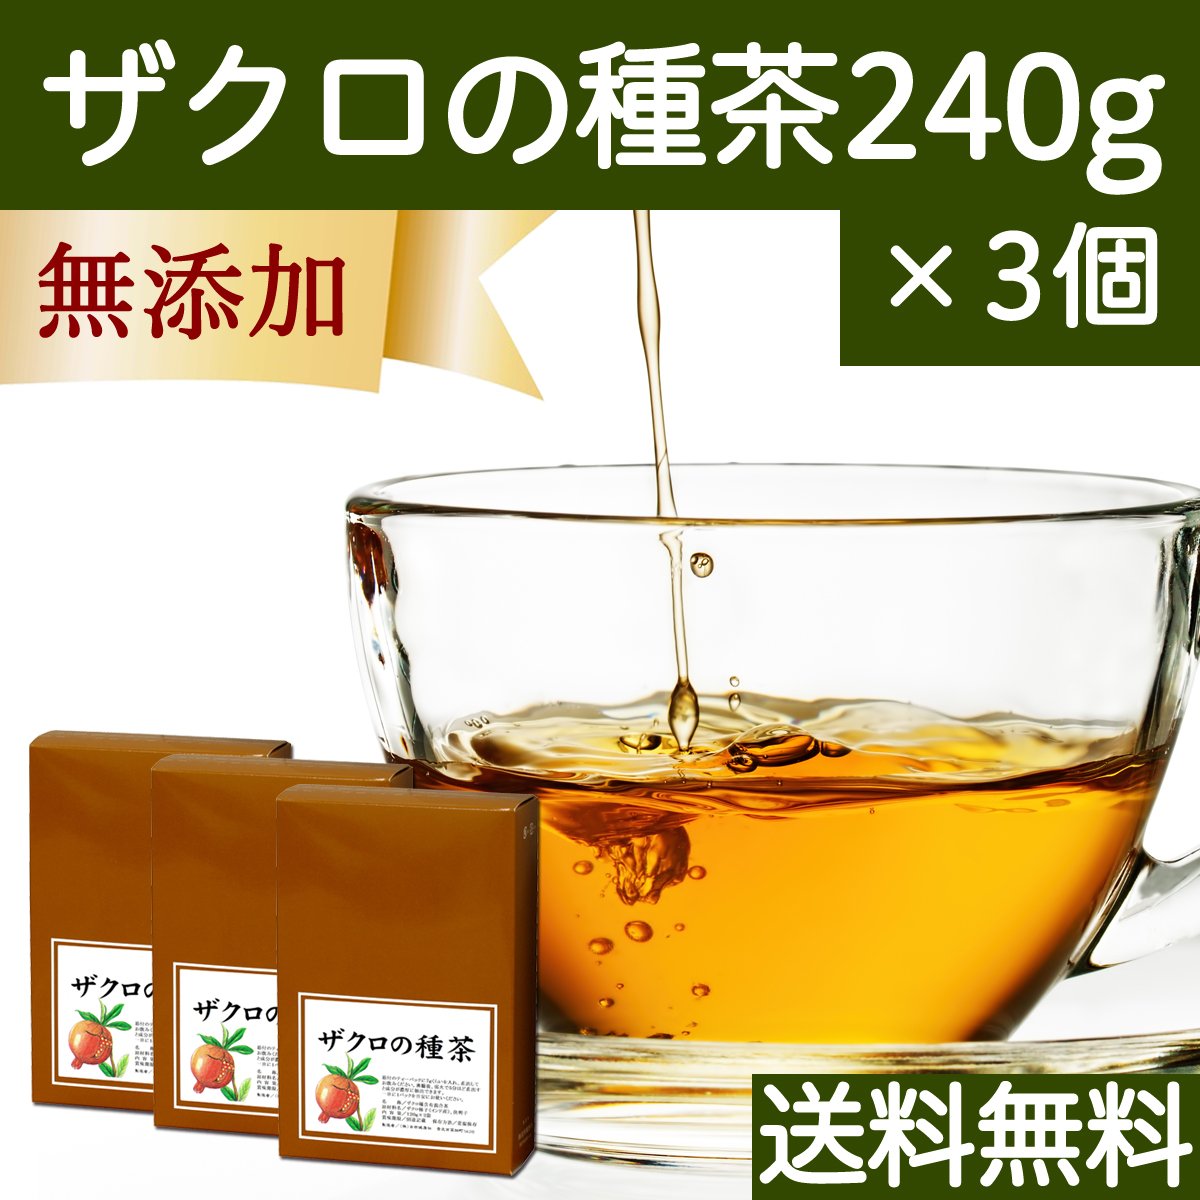 自然健康社 自然健康社 ザクロの種茶 240g × 3個 健康茶の商品画像